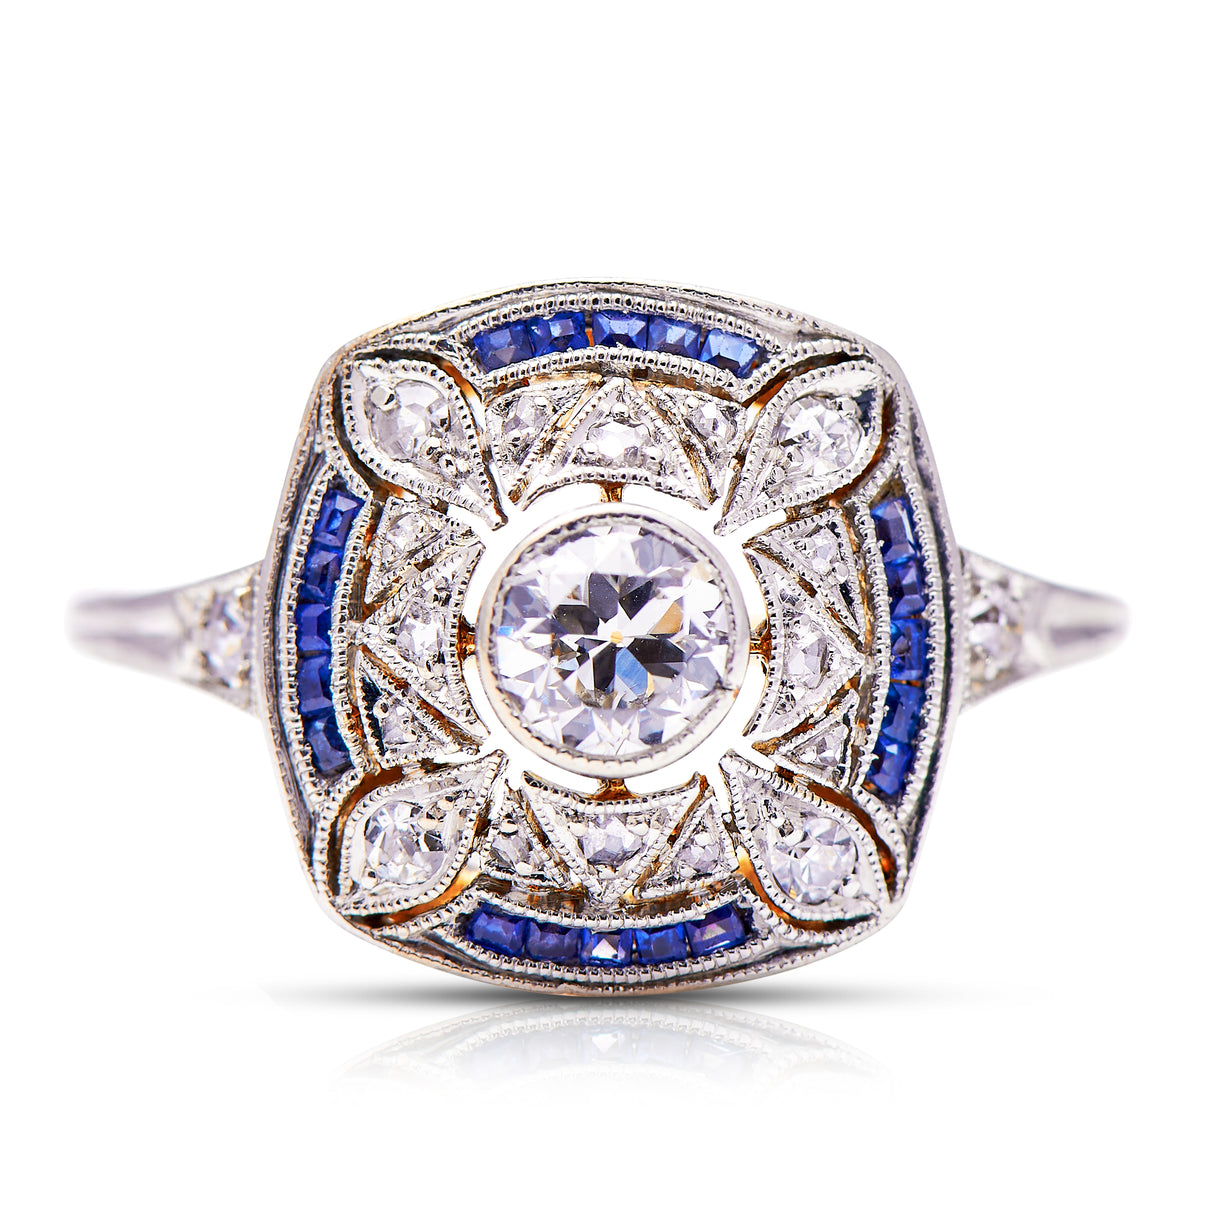 Belle-Époque-Mosaic-Edwardian-Sapphire-Diamond-Antique-18ct-Gold-Ring